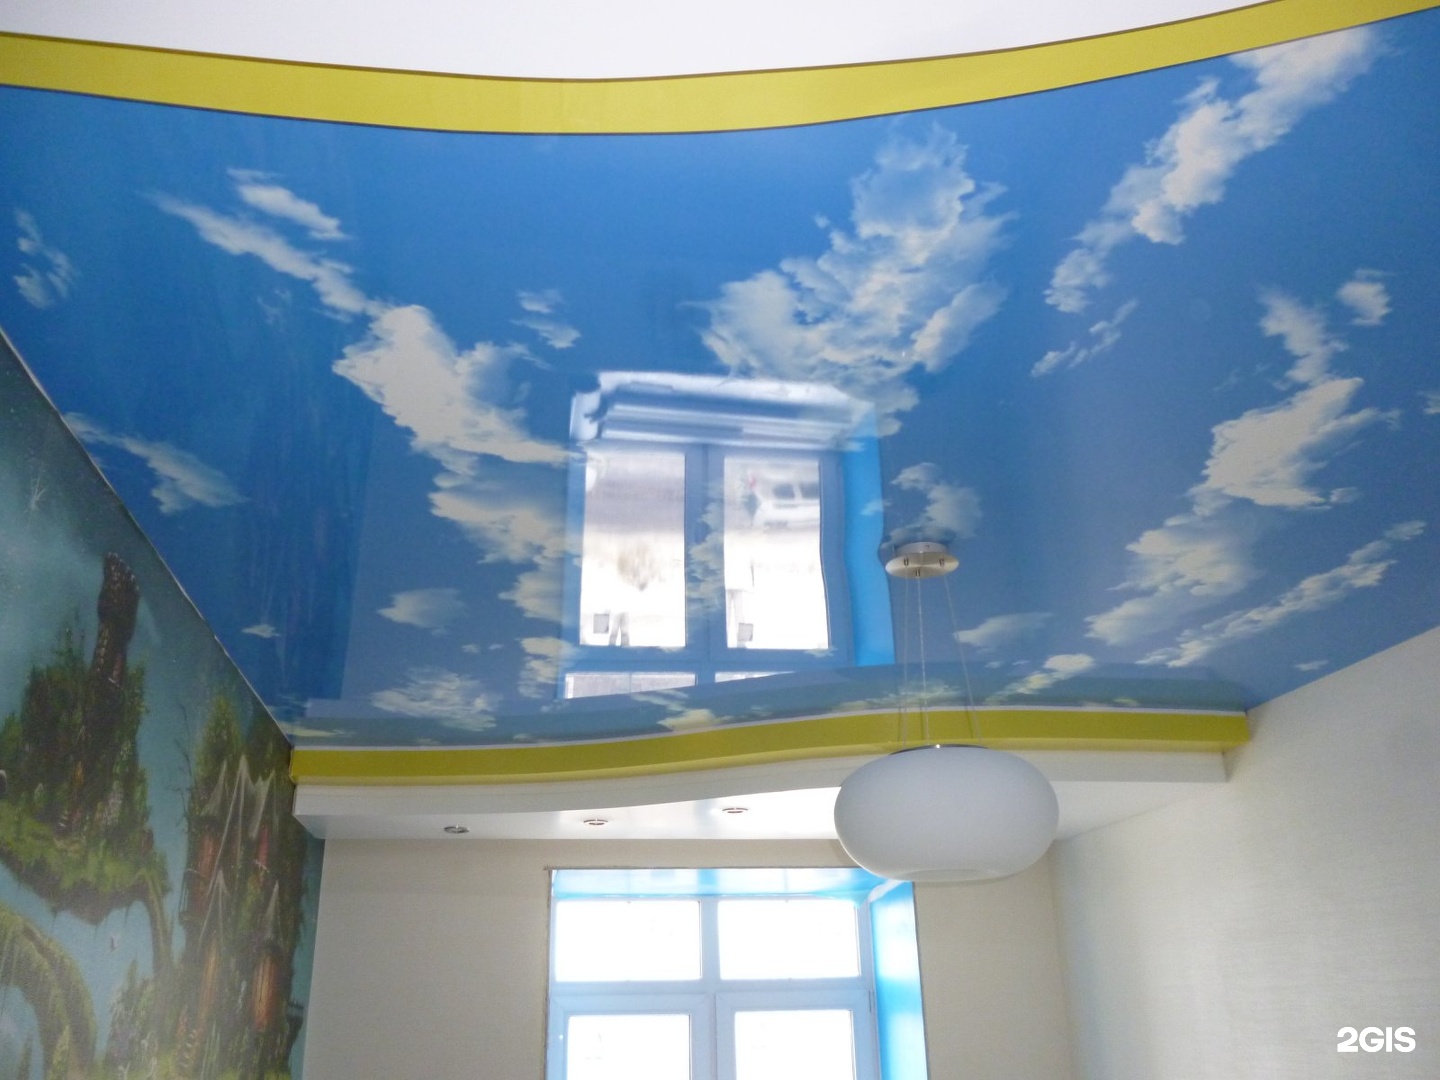 Натяжной потолок двухуровневый облака